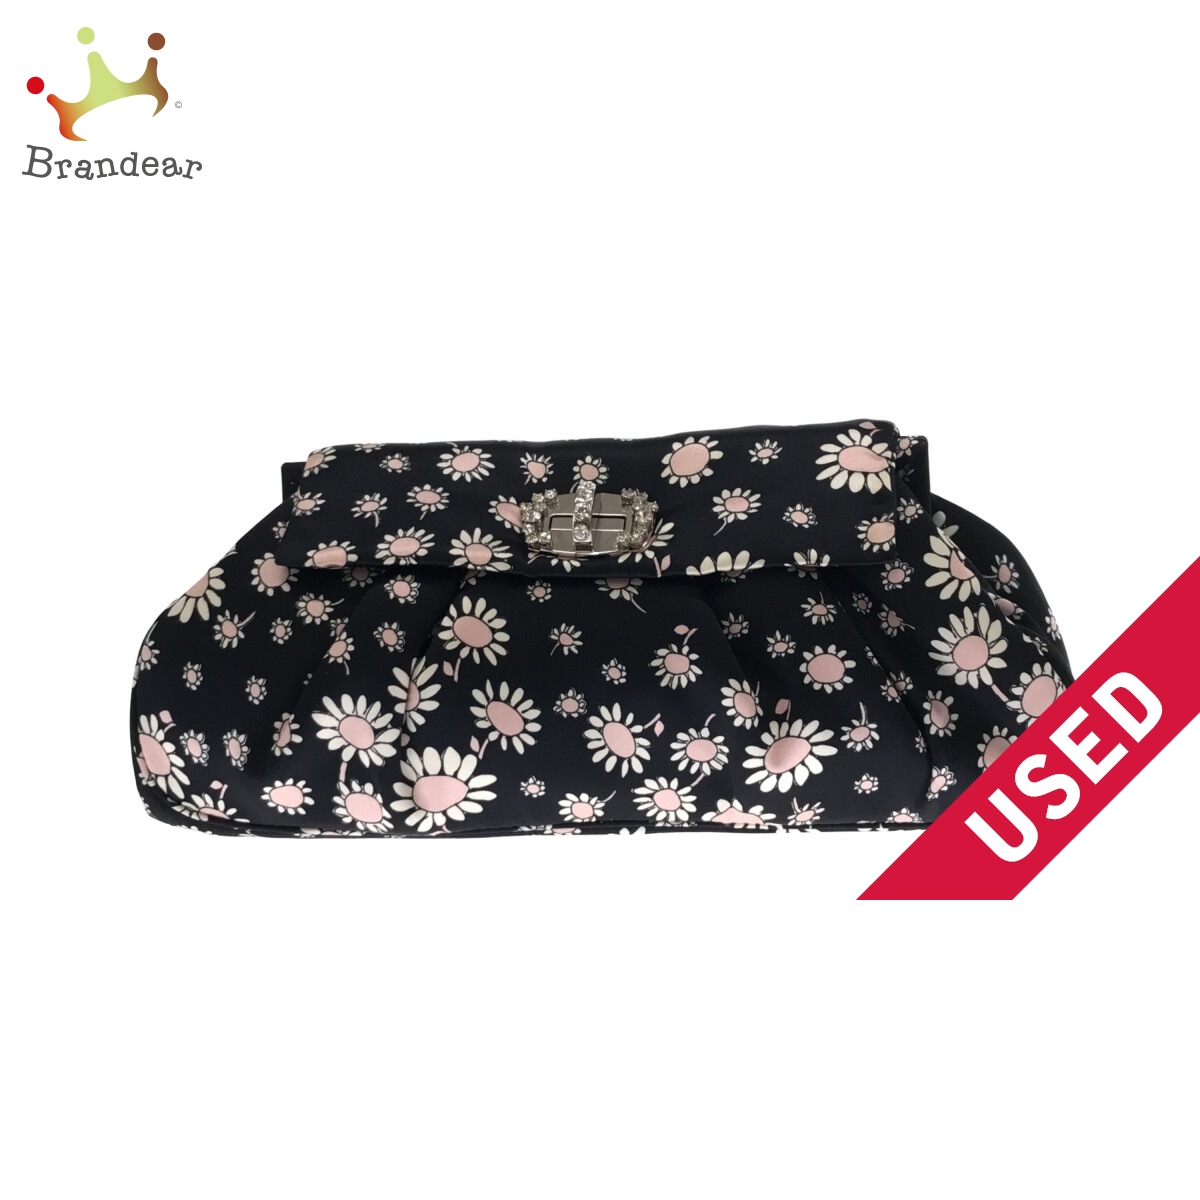 最上の品質な miumiu(ミュウミュウ) クラッチバッグ 花柄 ビジュー 黒×白×ピンク サテン 